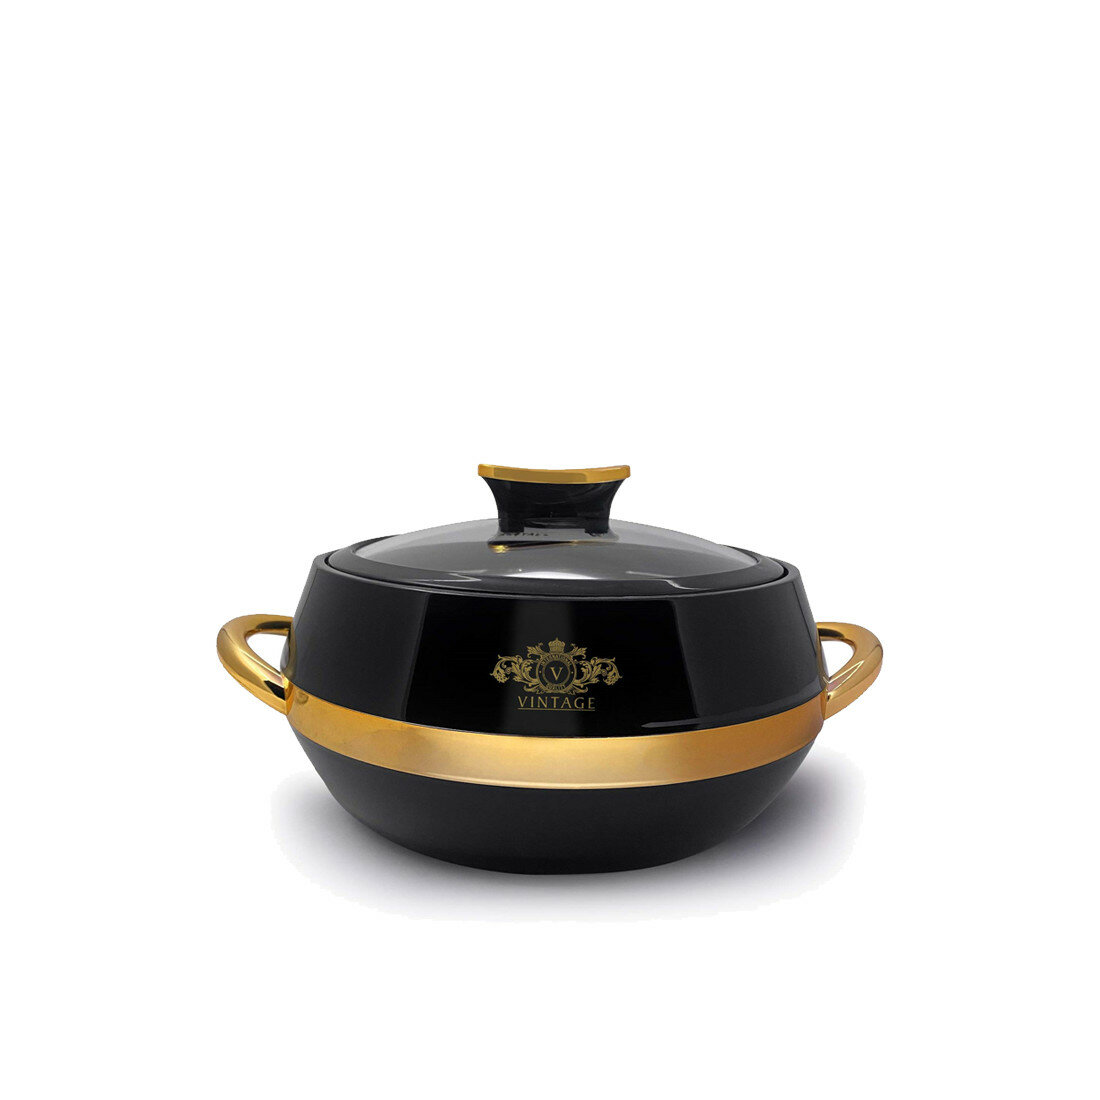 Термокастрюля Jaypee Vintage Black Gold, объемом 1,5 литра